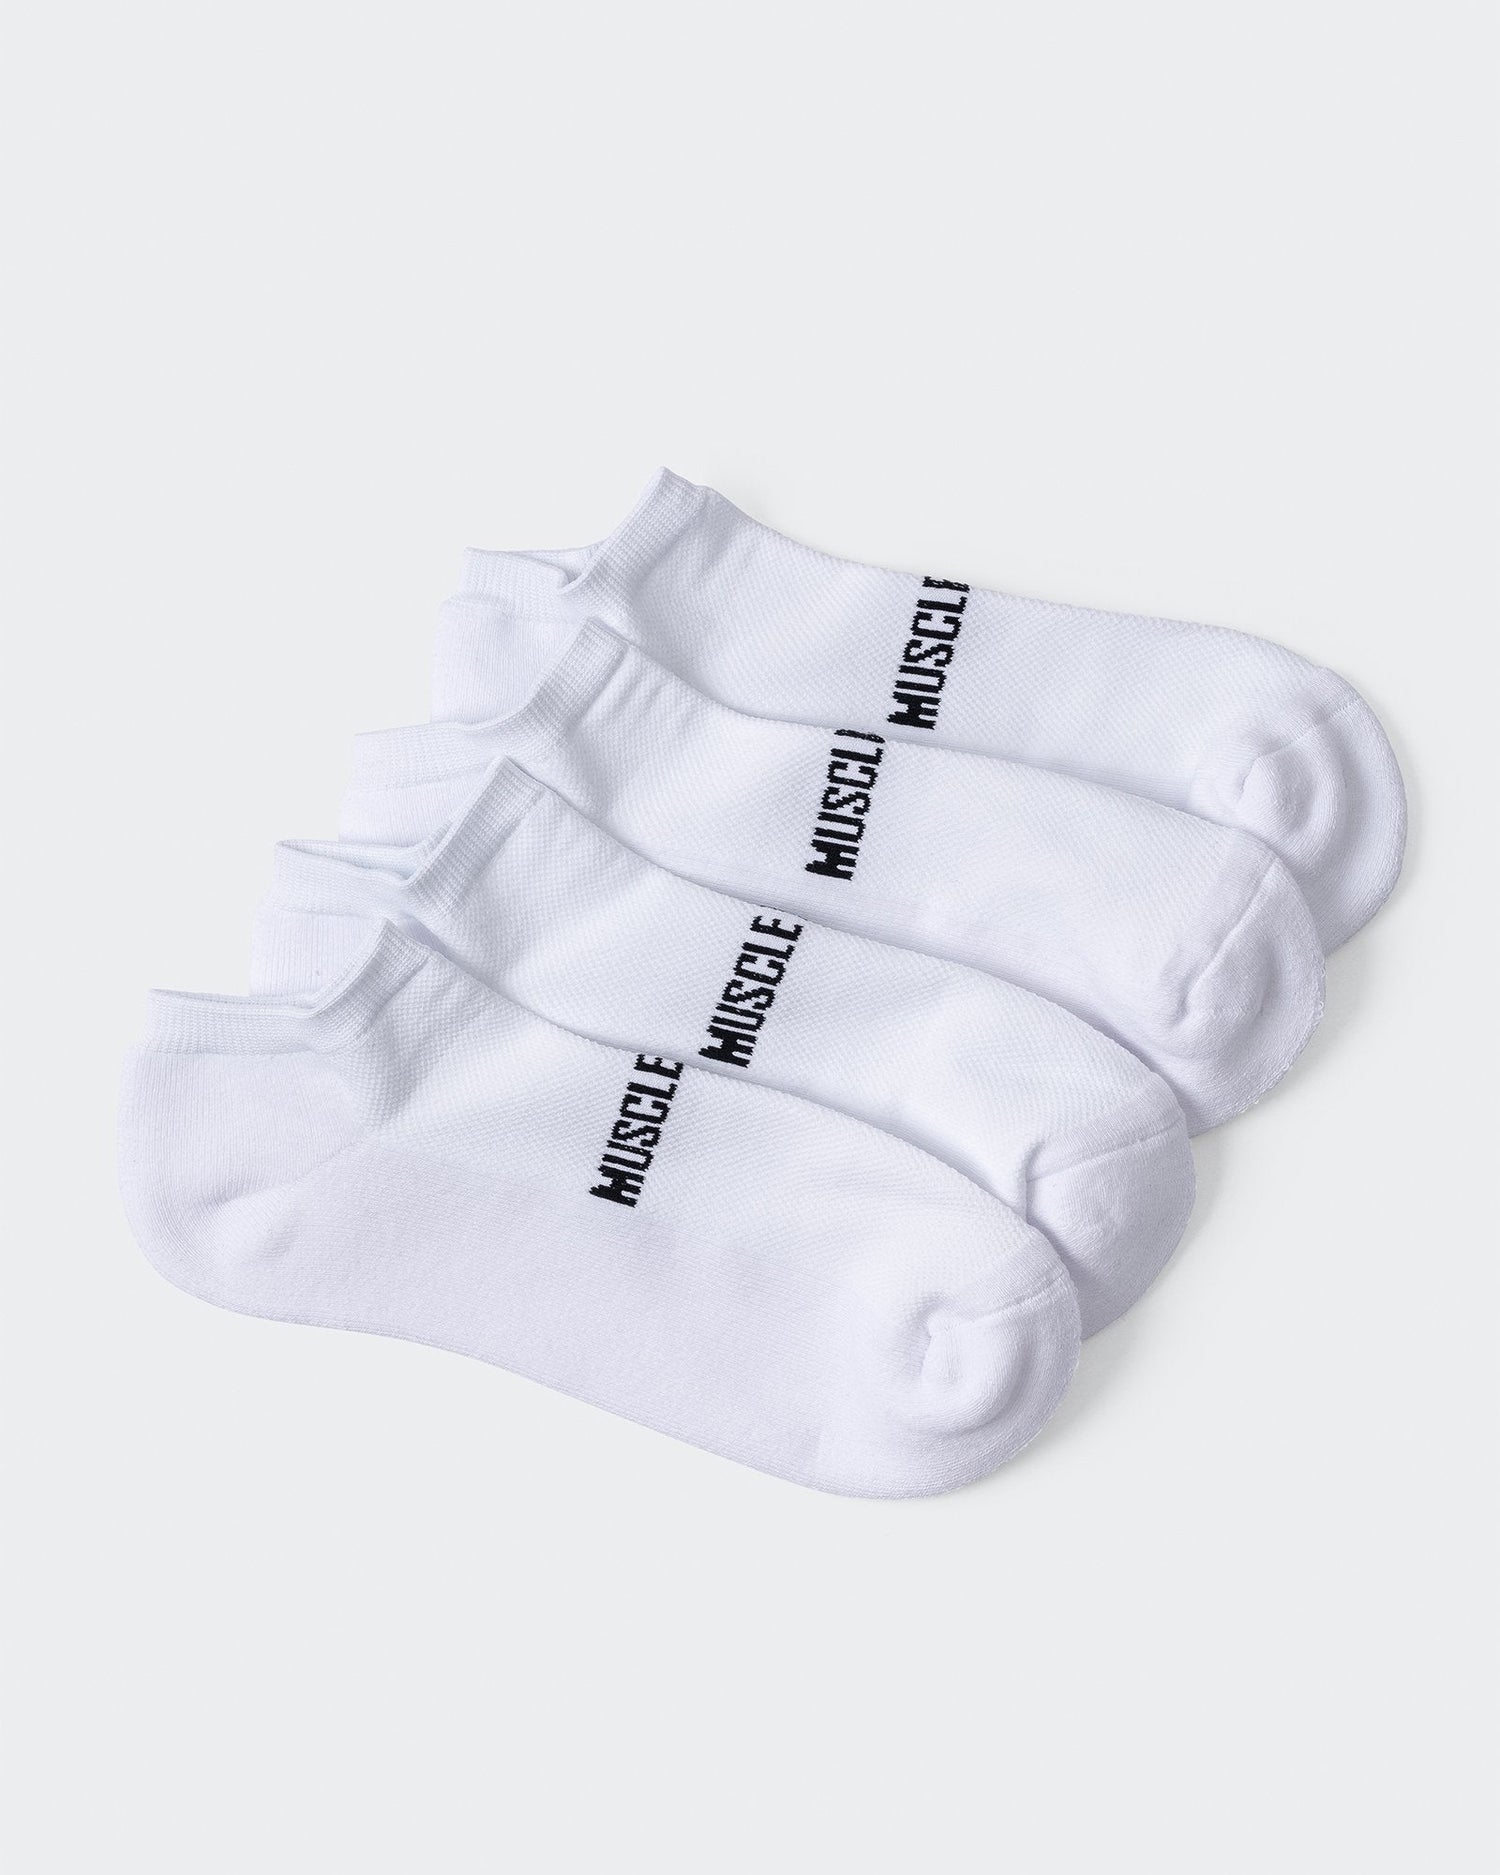 MN Unisex Ankle Socks 2 Pack - White